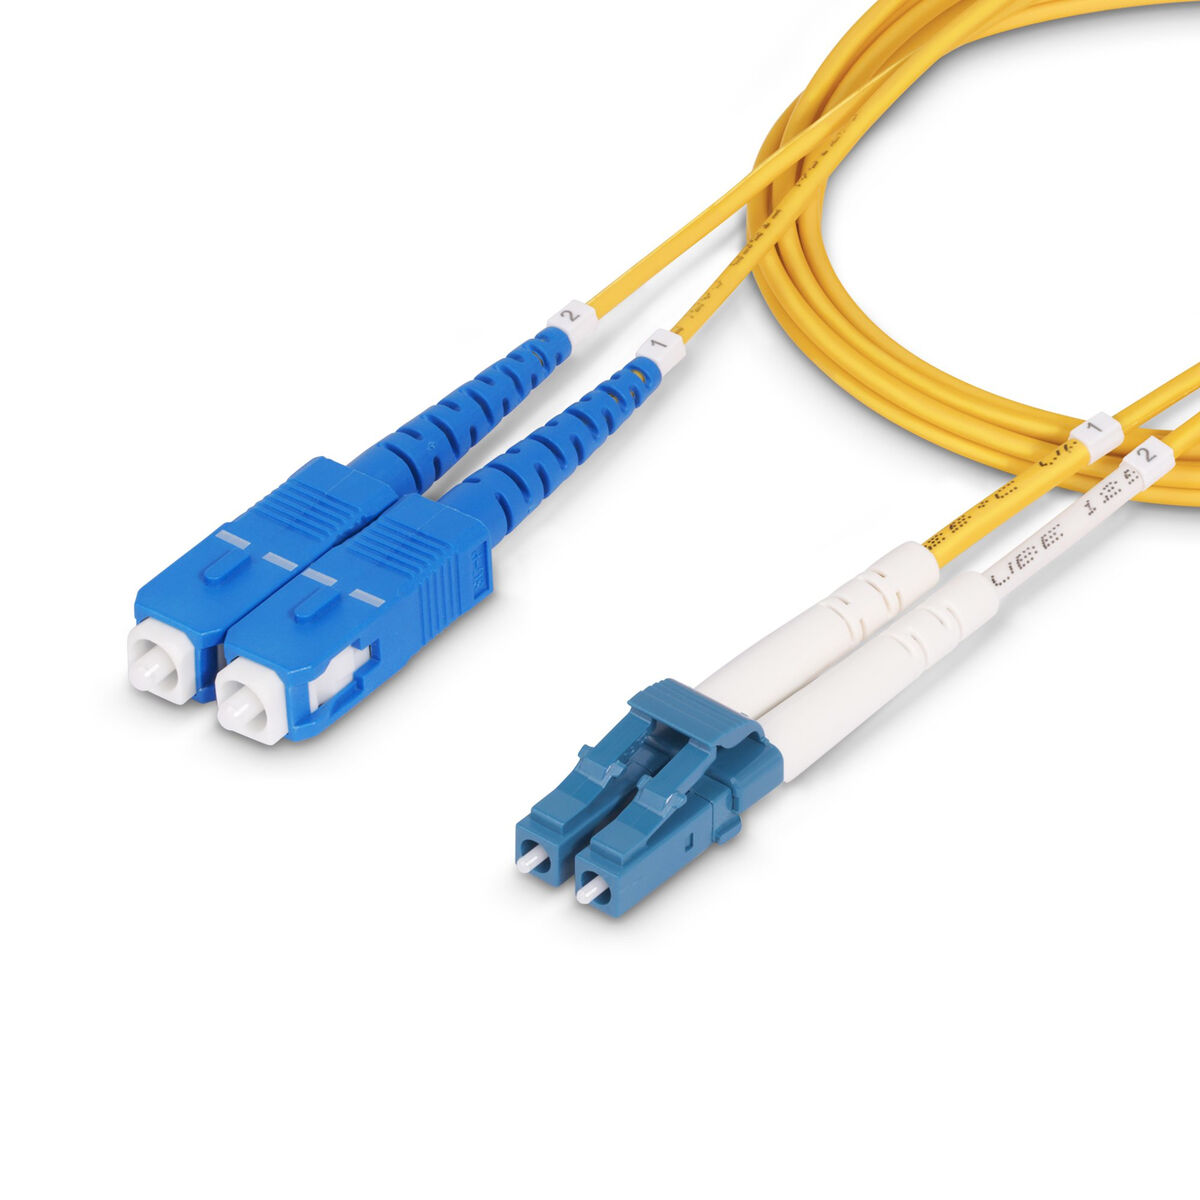 Osta tuote USB-Kaapeli Startech SMLCSC-OS2-1M Keltainen 1 m (1 osaa) verkkokaupastamme Korhone: Urheilu & Vapaa-aika 10% alennuksella koodilla KORHONE